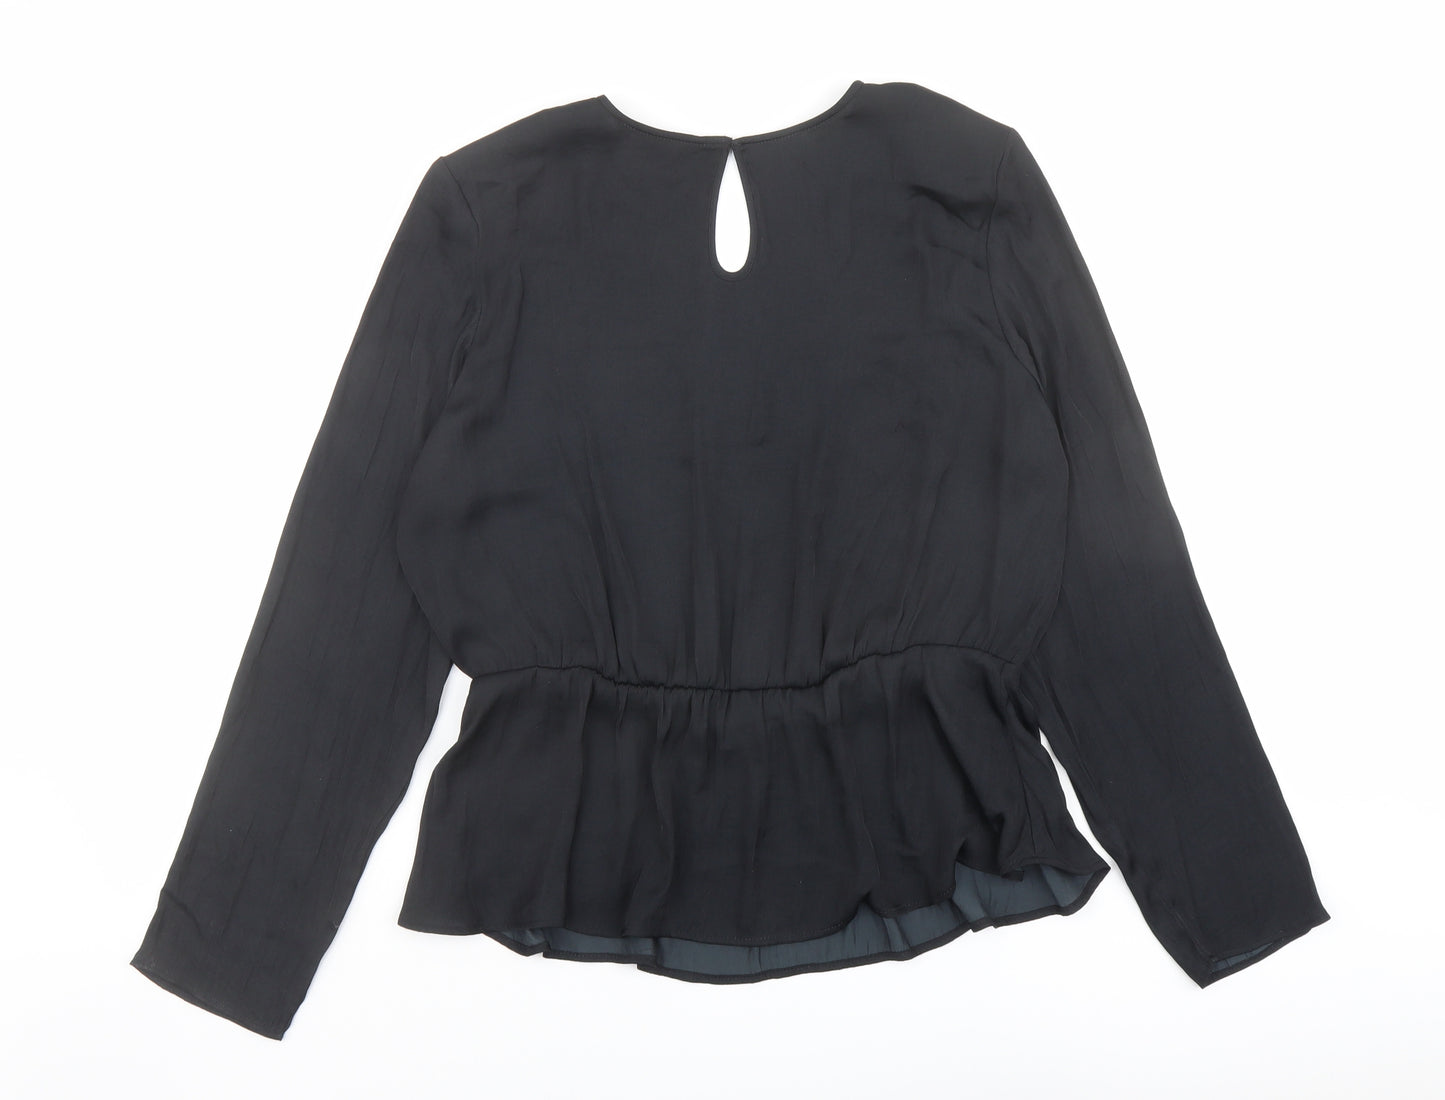 Marks and Spencer Womens Black Polyester Basic Blouse Size 14 V-Neck - Peplum